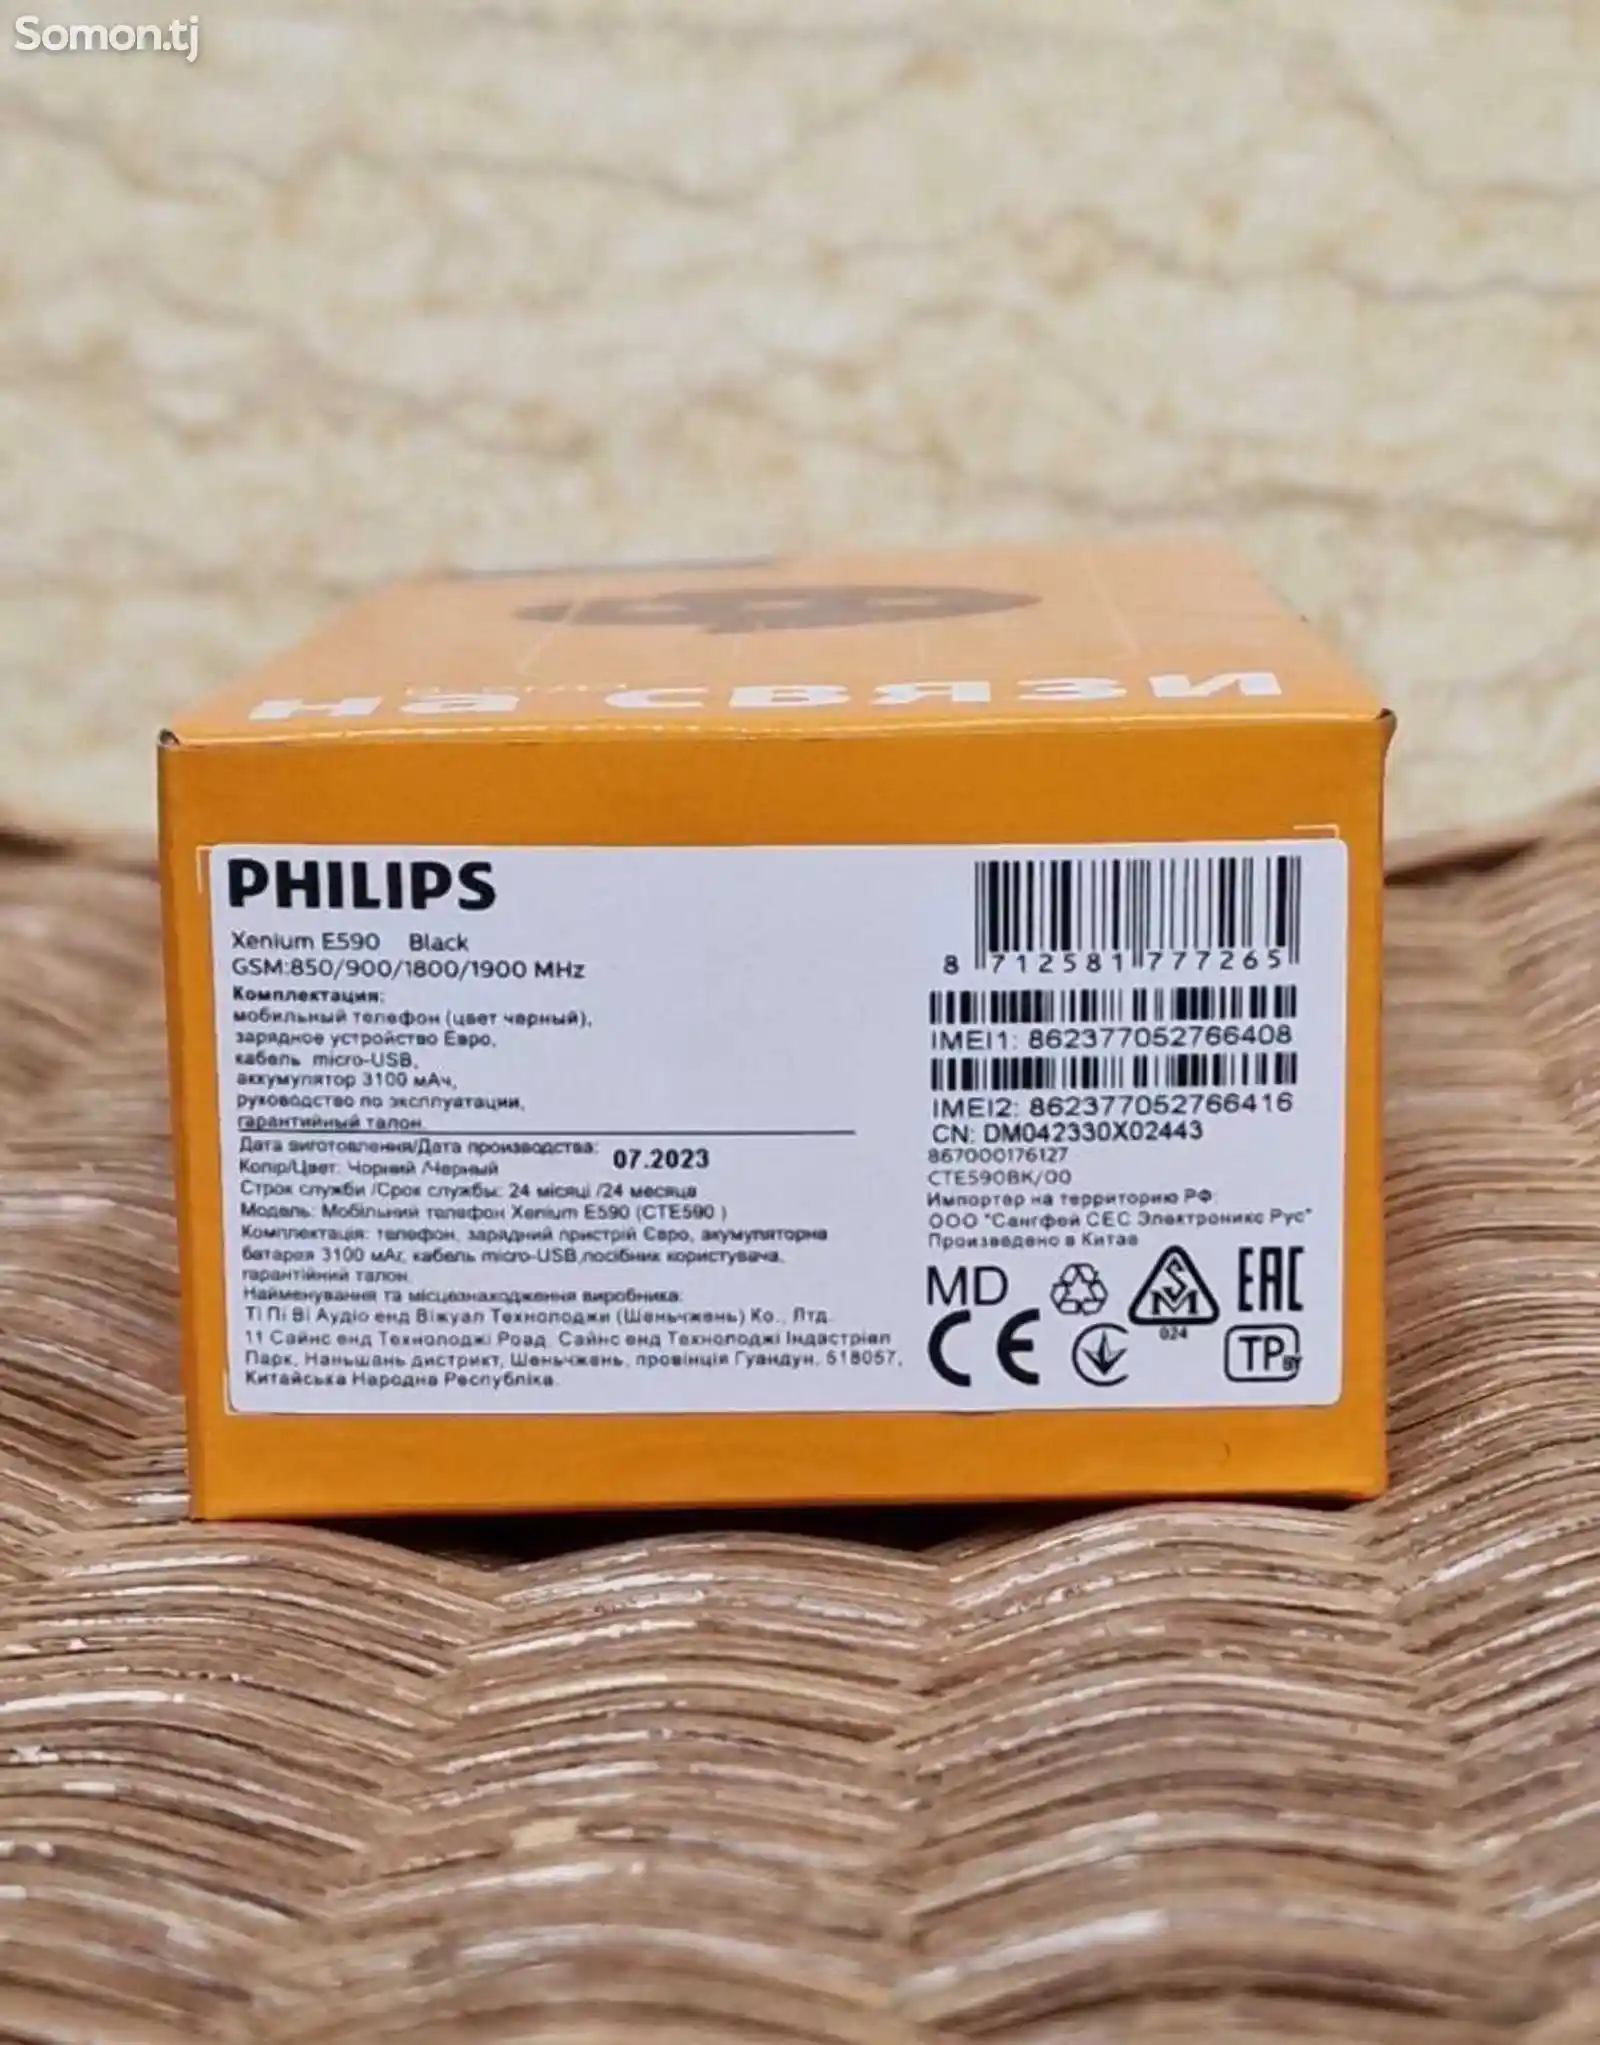 Philips E590-3